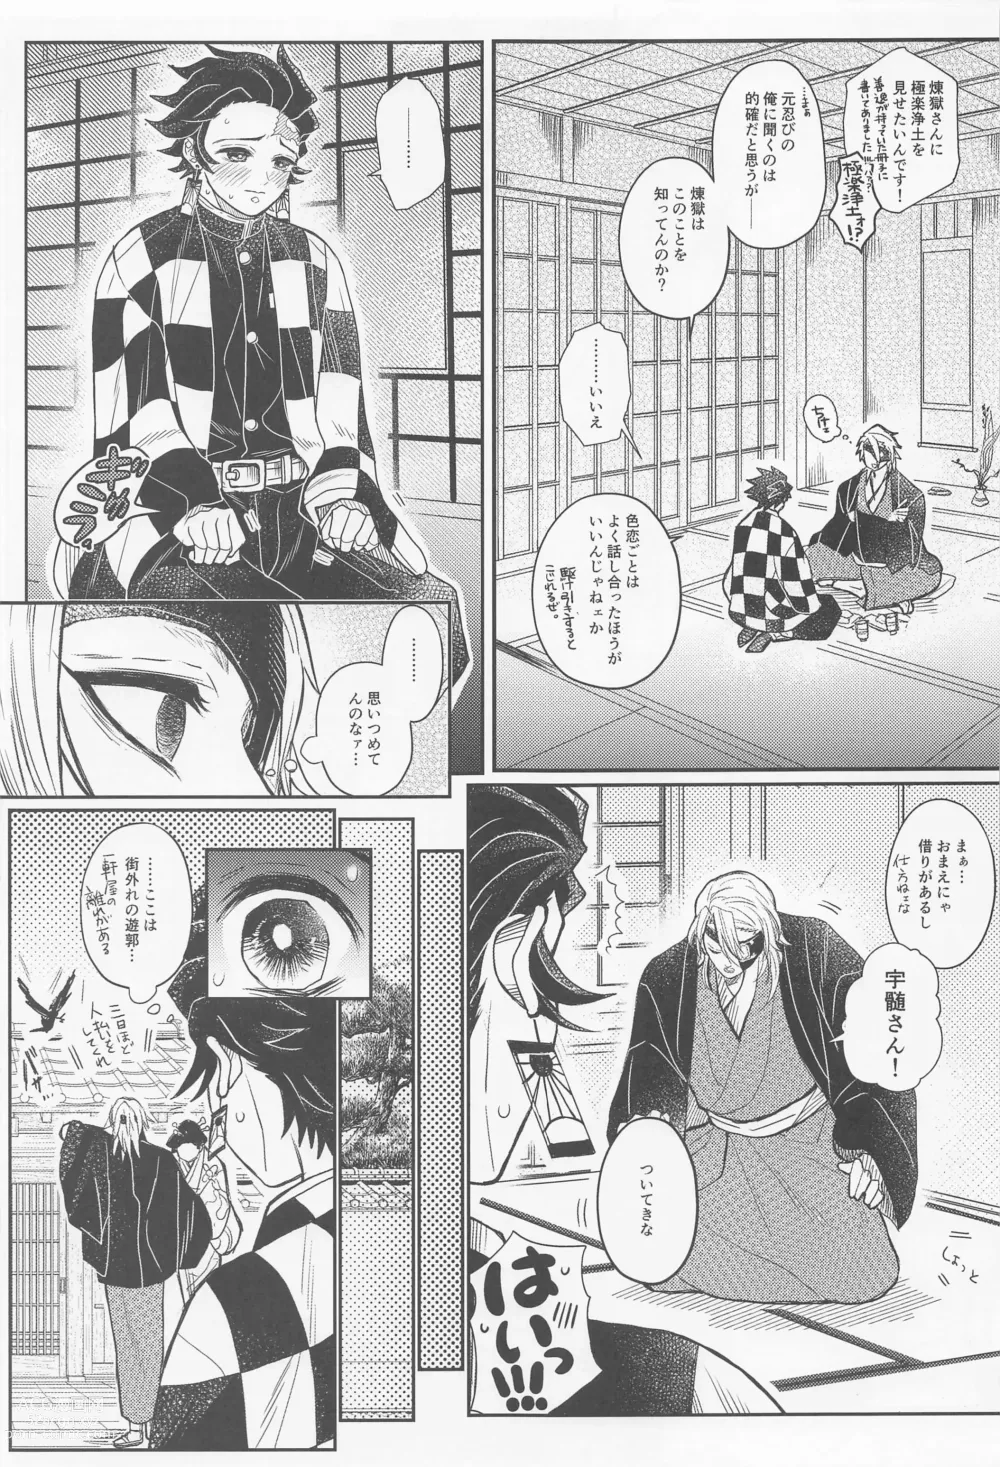 Page 4 of doujinshi Gokurakujoudo